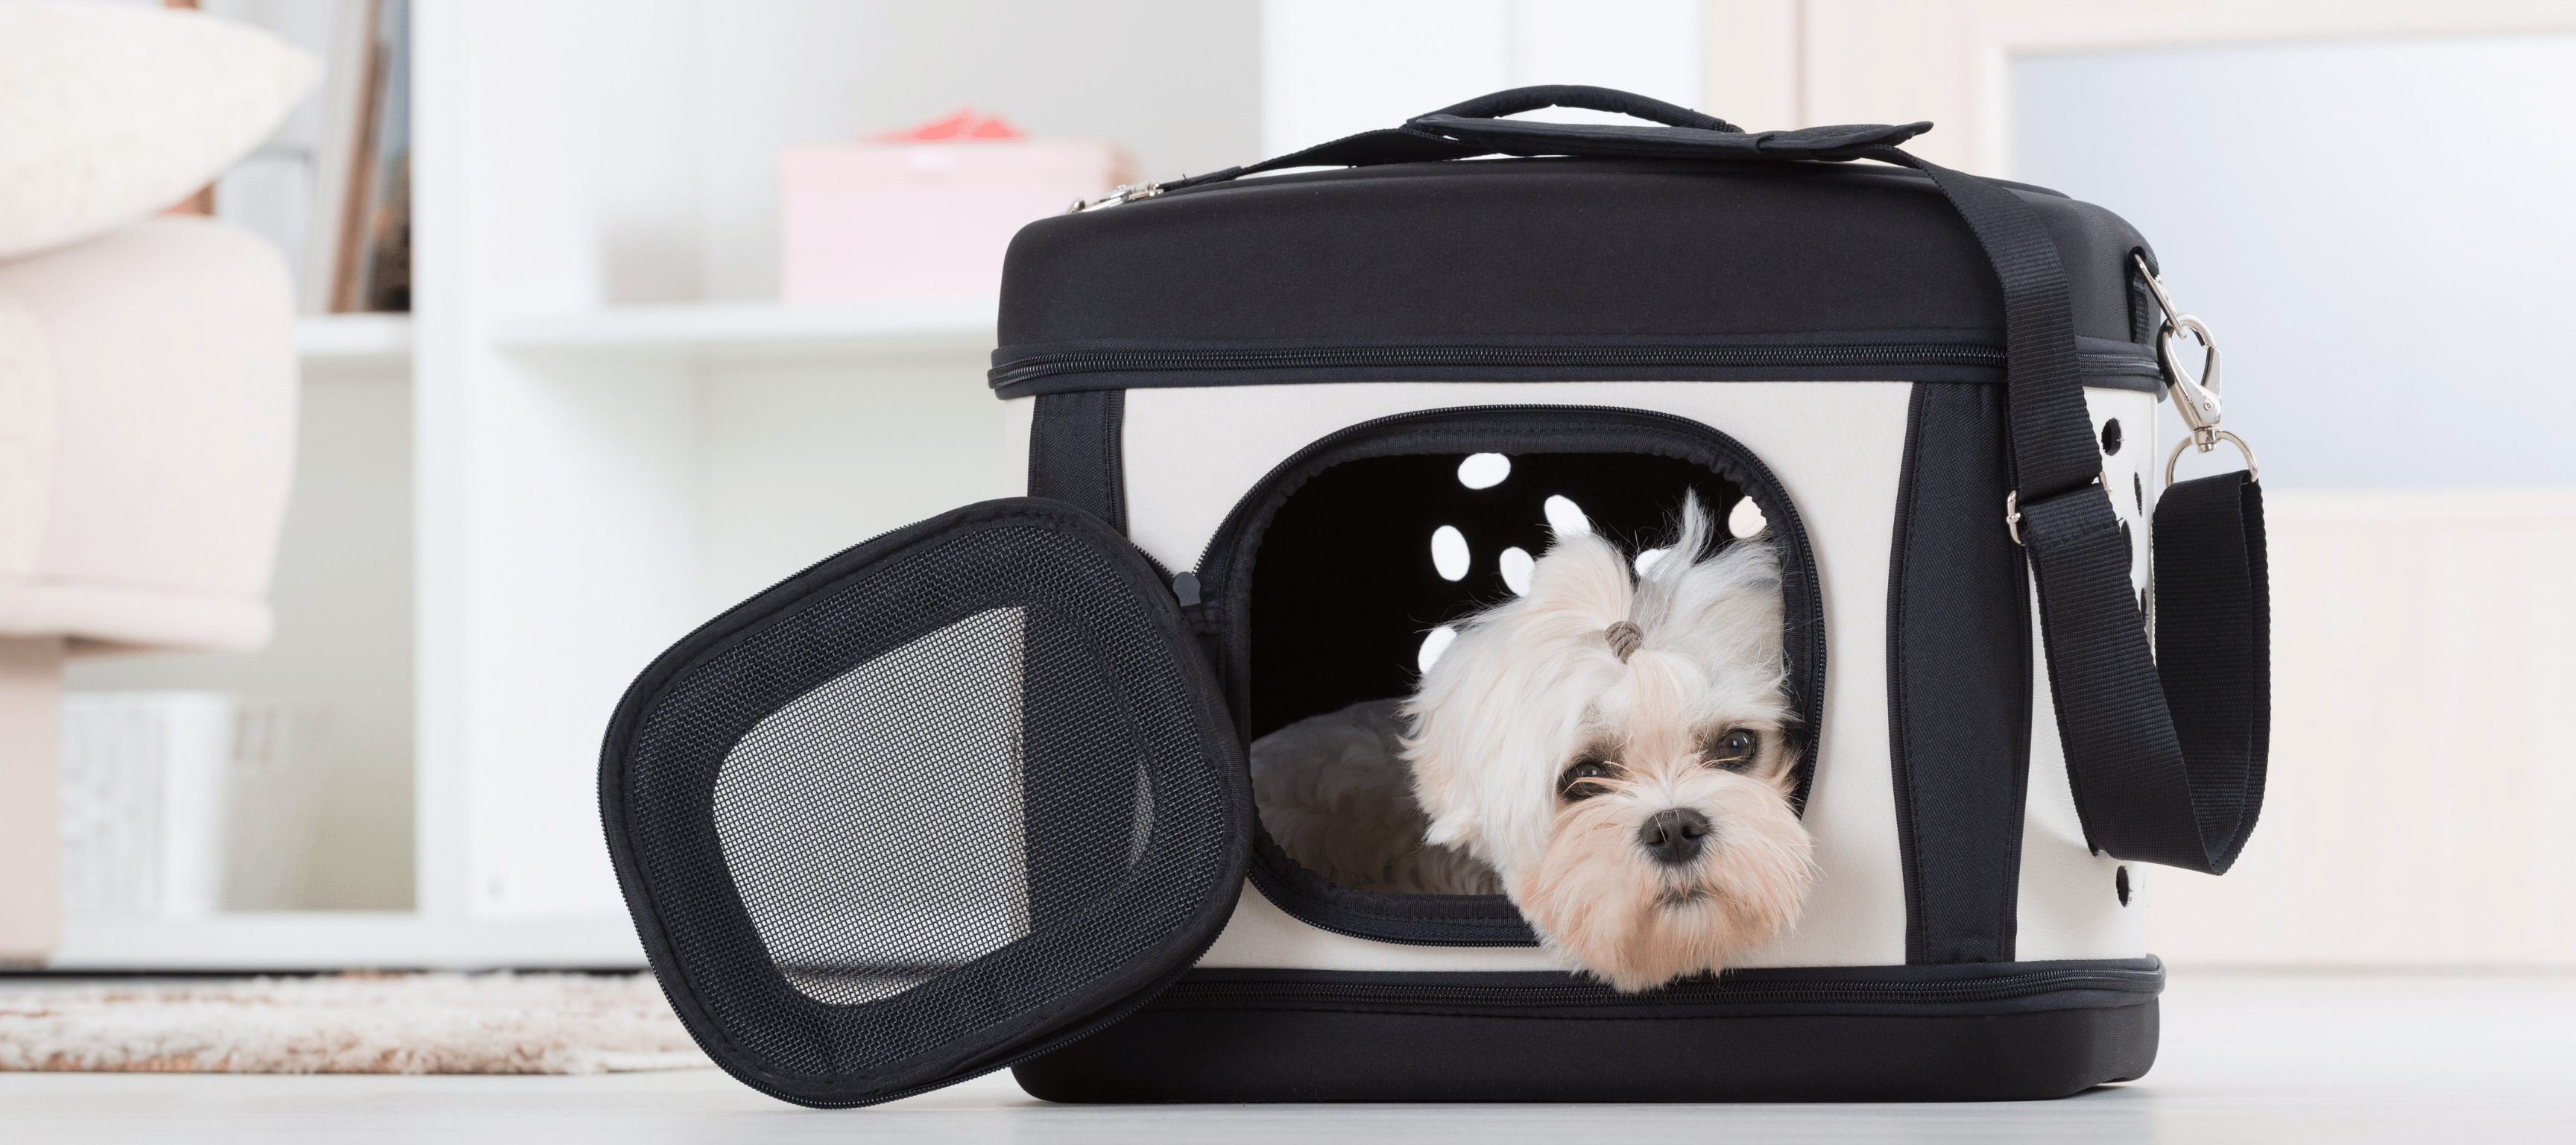 Petboda Hunde-Auto-Barriere für SUV, Kofferraum, faltbar, verstellbar,  Trennwand und Gepäckgitter, um Hunde im Rücken zu halten (Patentdesign)